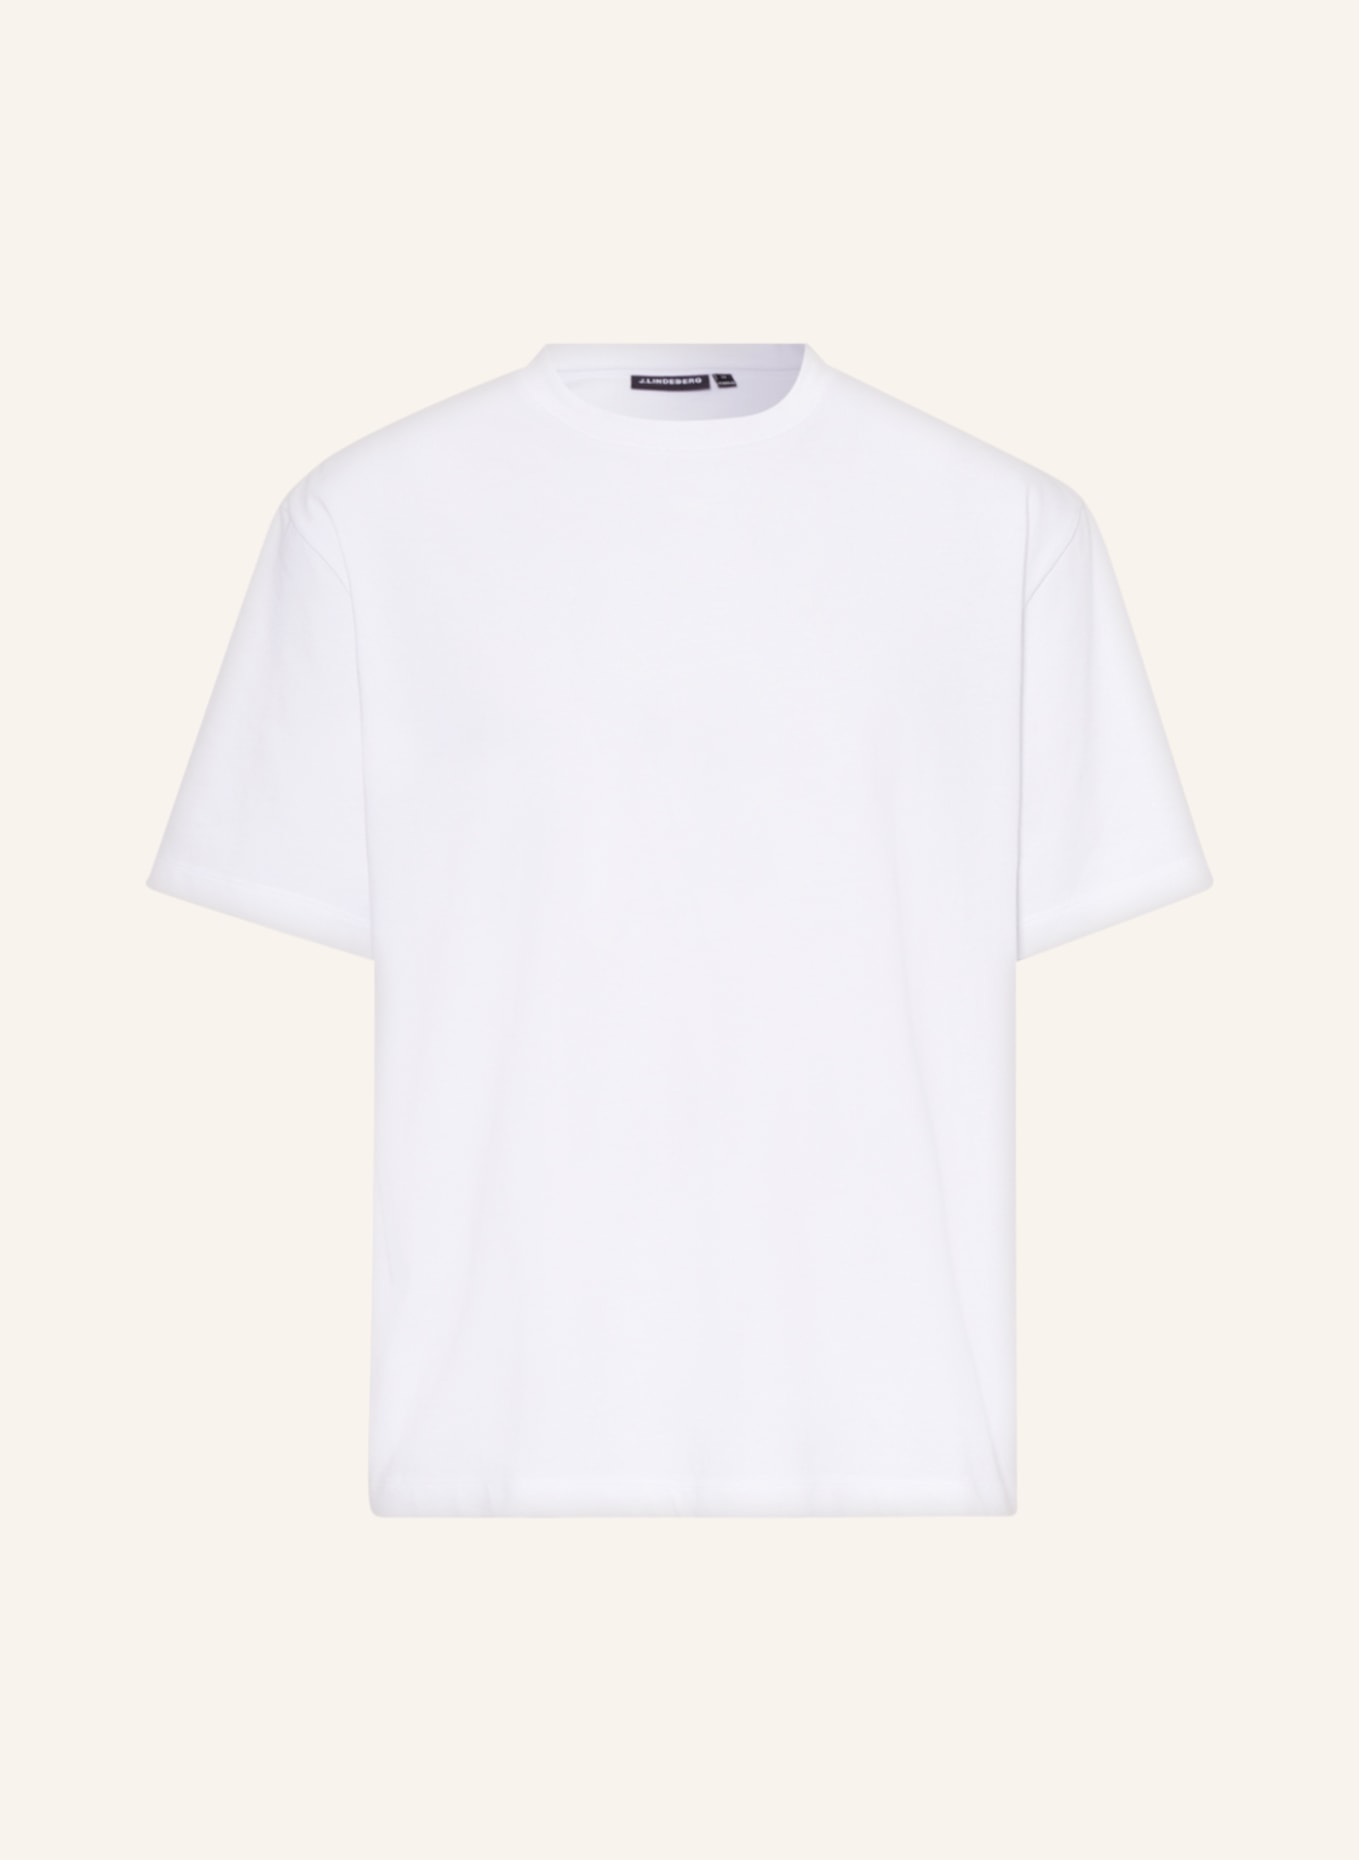 J.LINDEBERG T-shirt, Color: WHITE (Image 1)